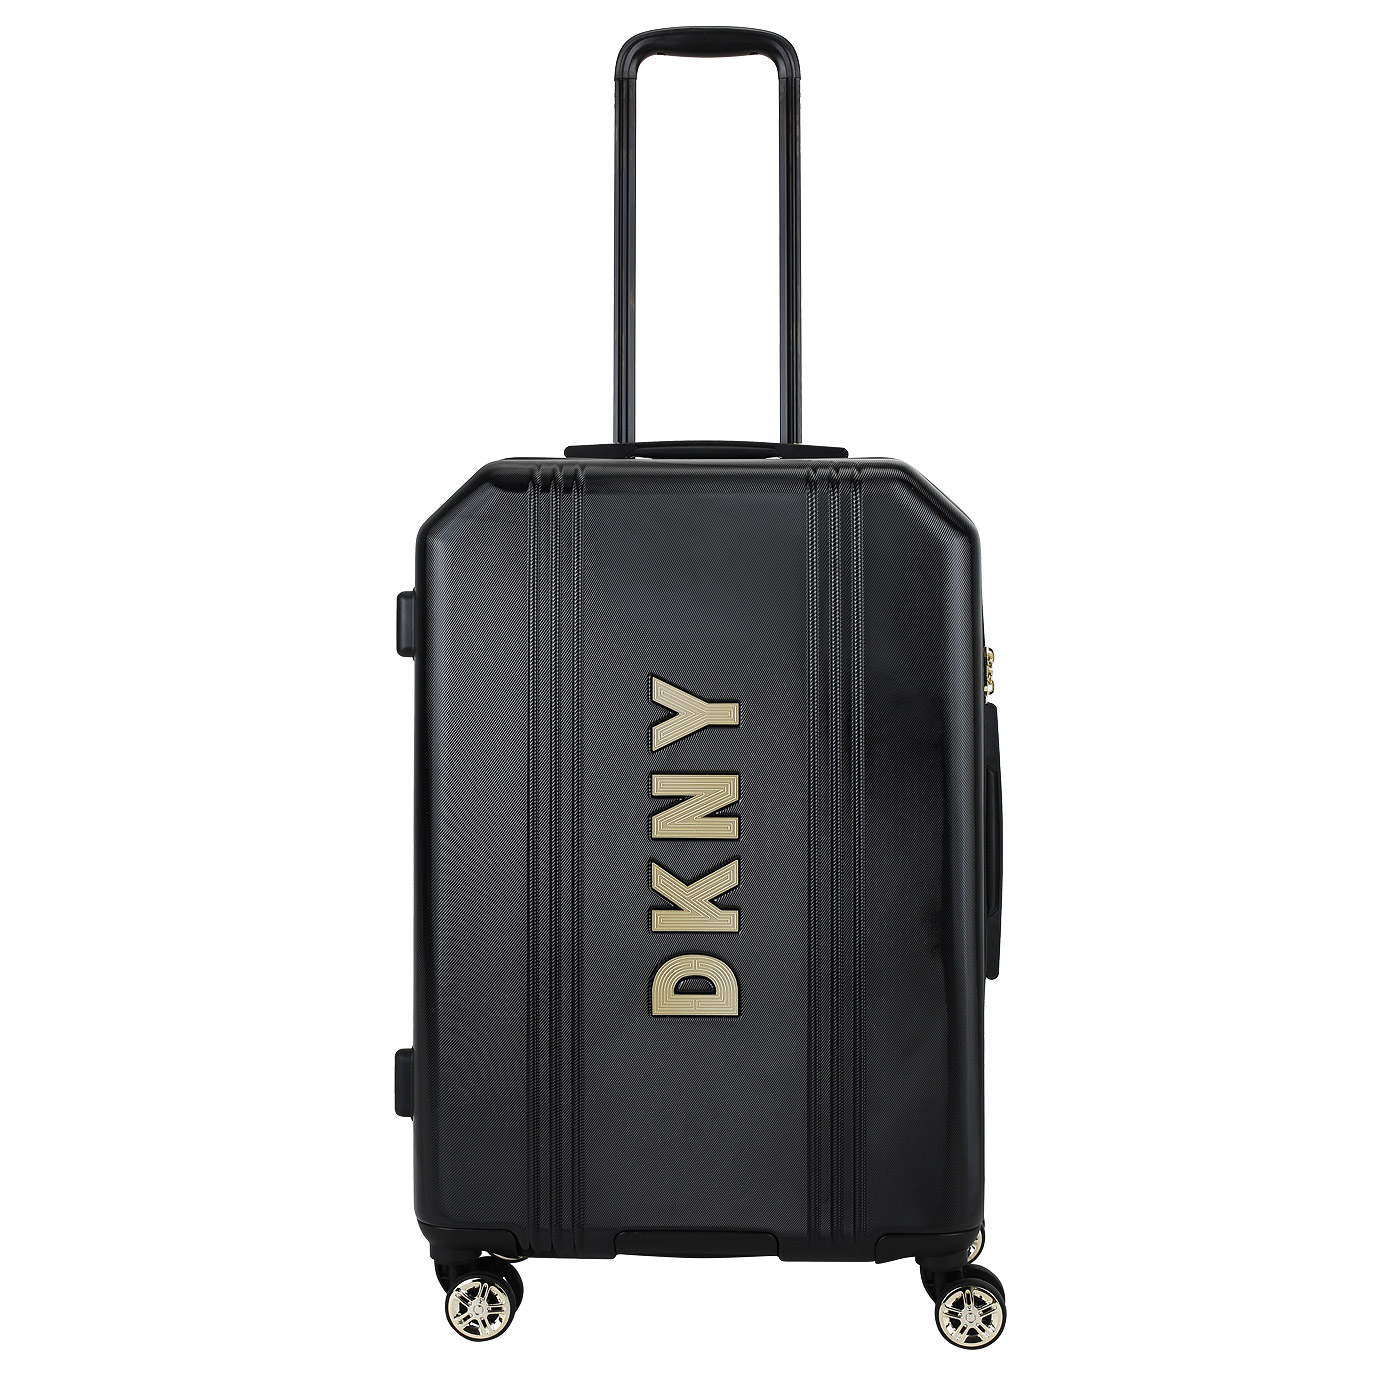 Чемодан средний M из ABS-пластика DKNY DKNY-1025 Show stopper